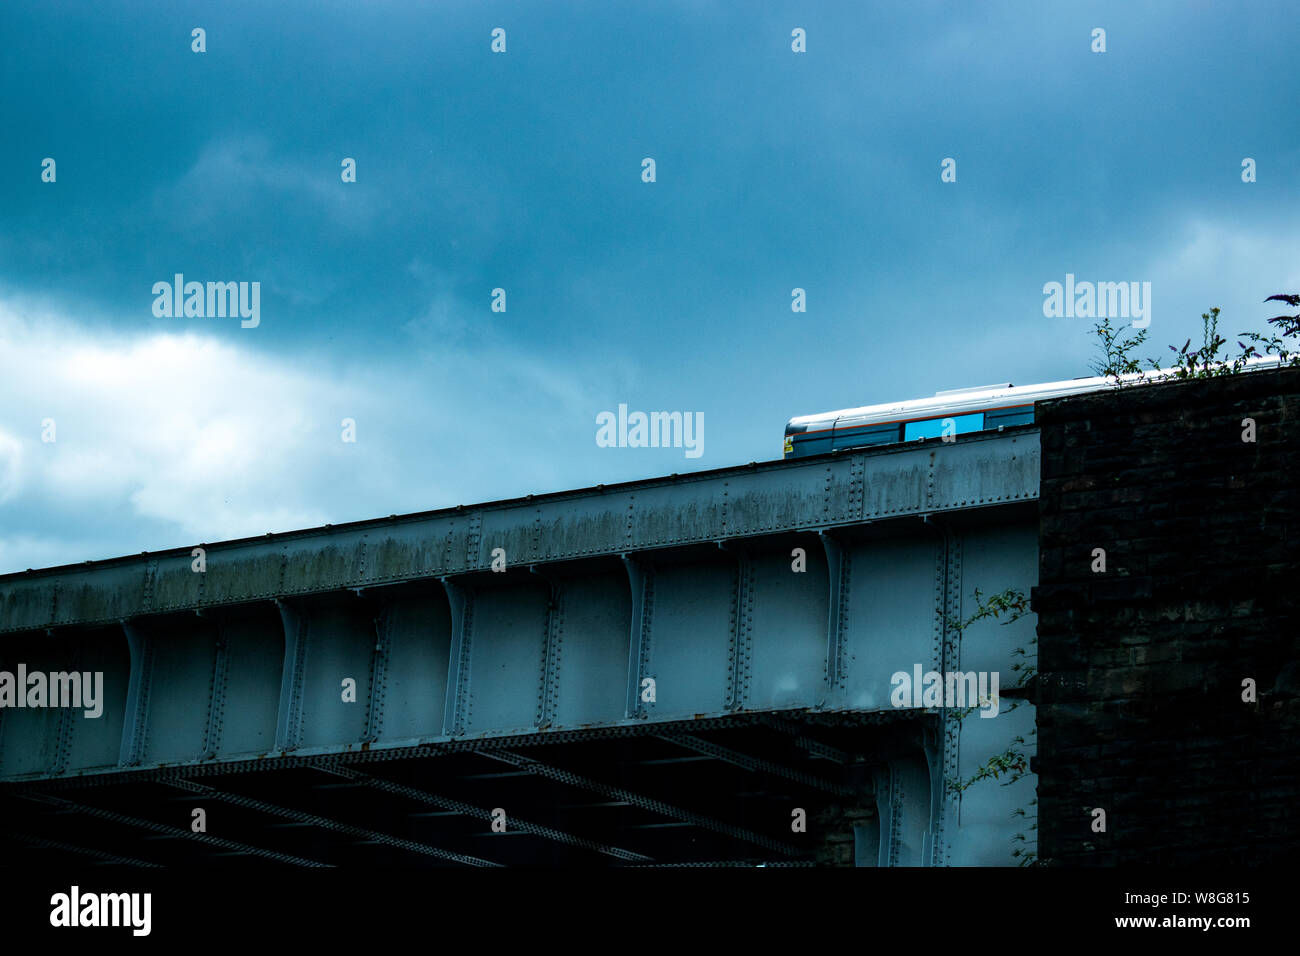 Train travelling across a bridge in Swansea, wales, U.K. Stock Photo